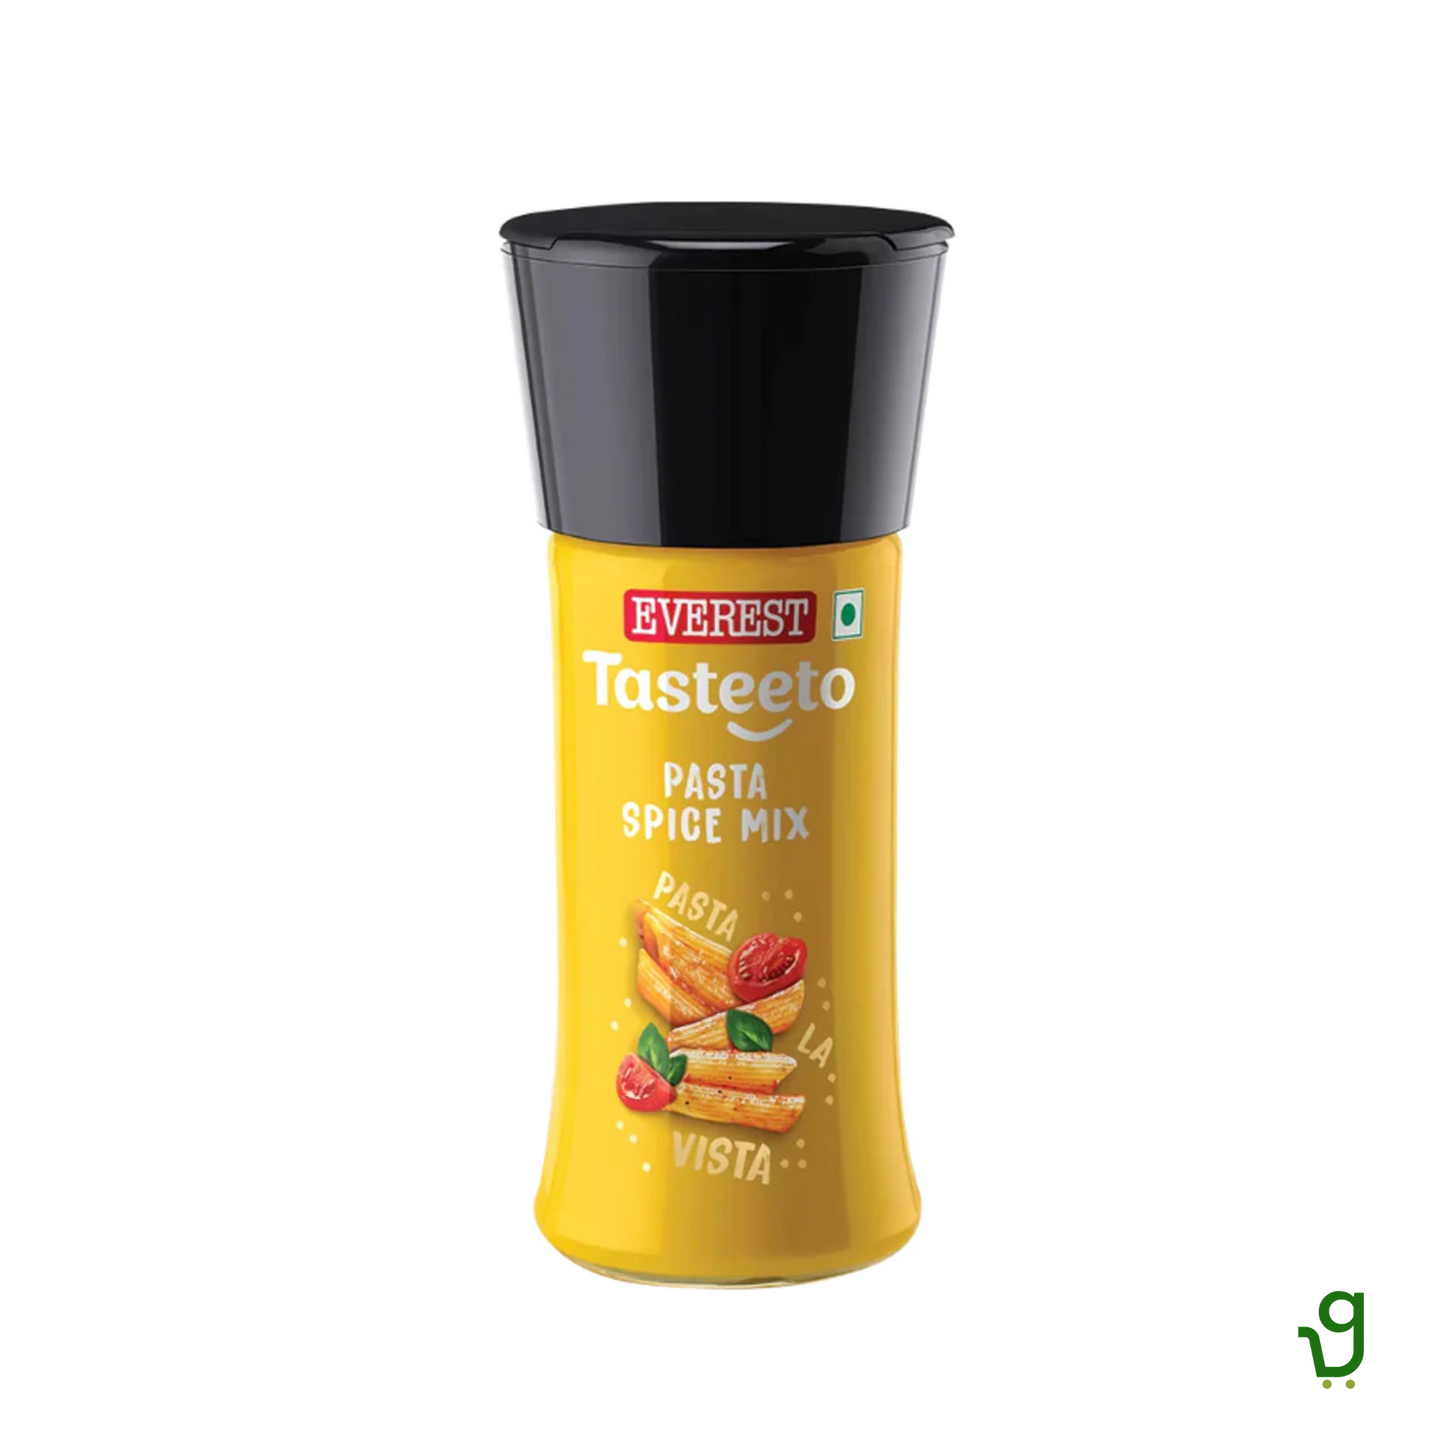 Everest Tasteeto Pasta Spice Mix 38g